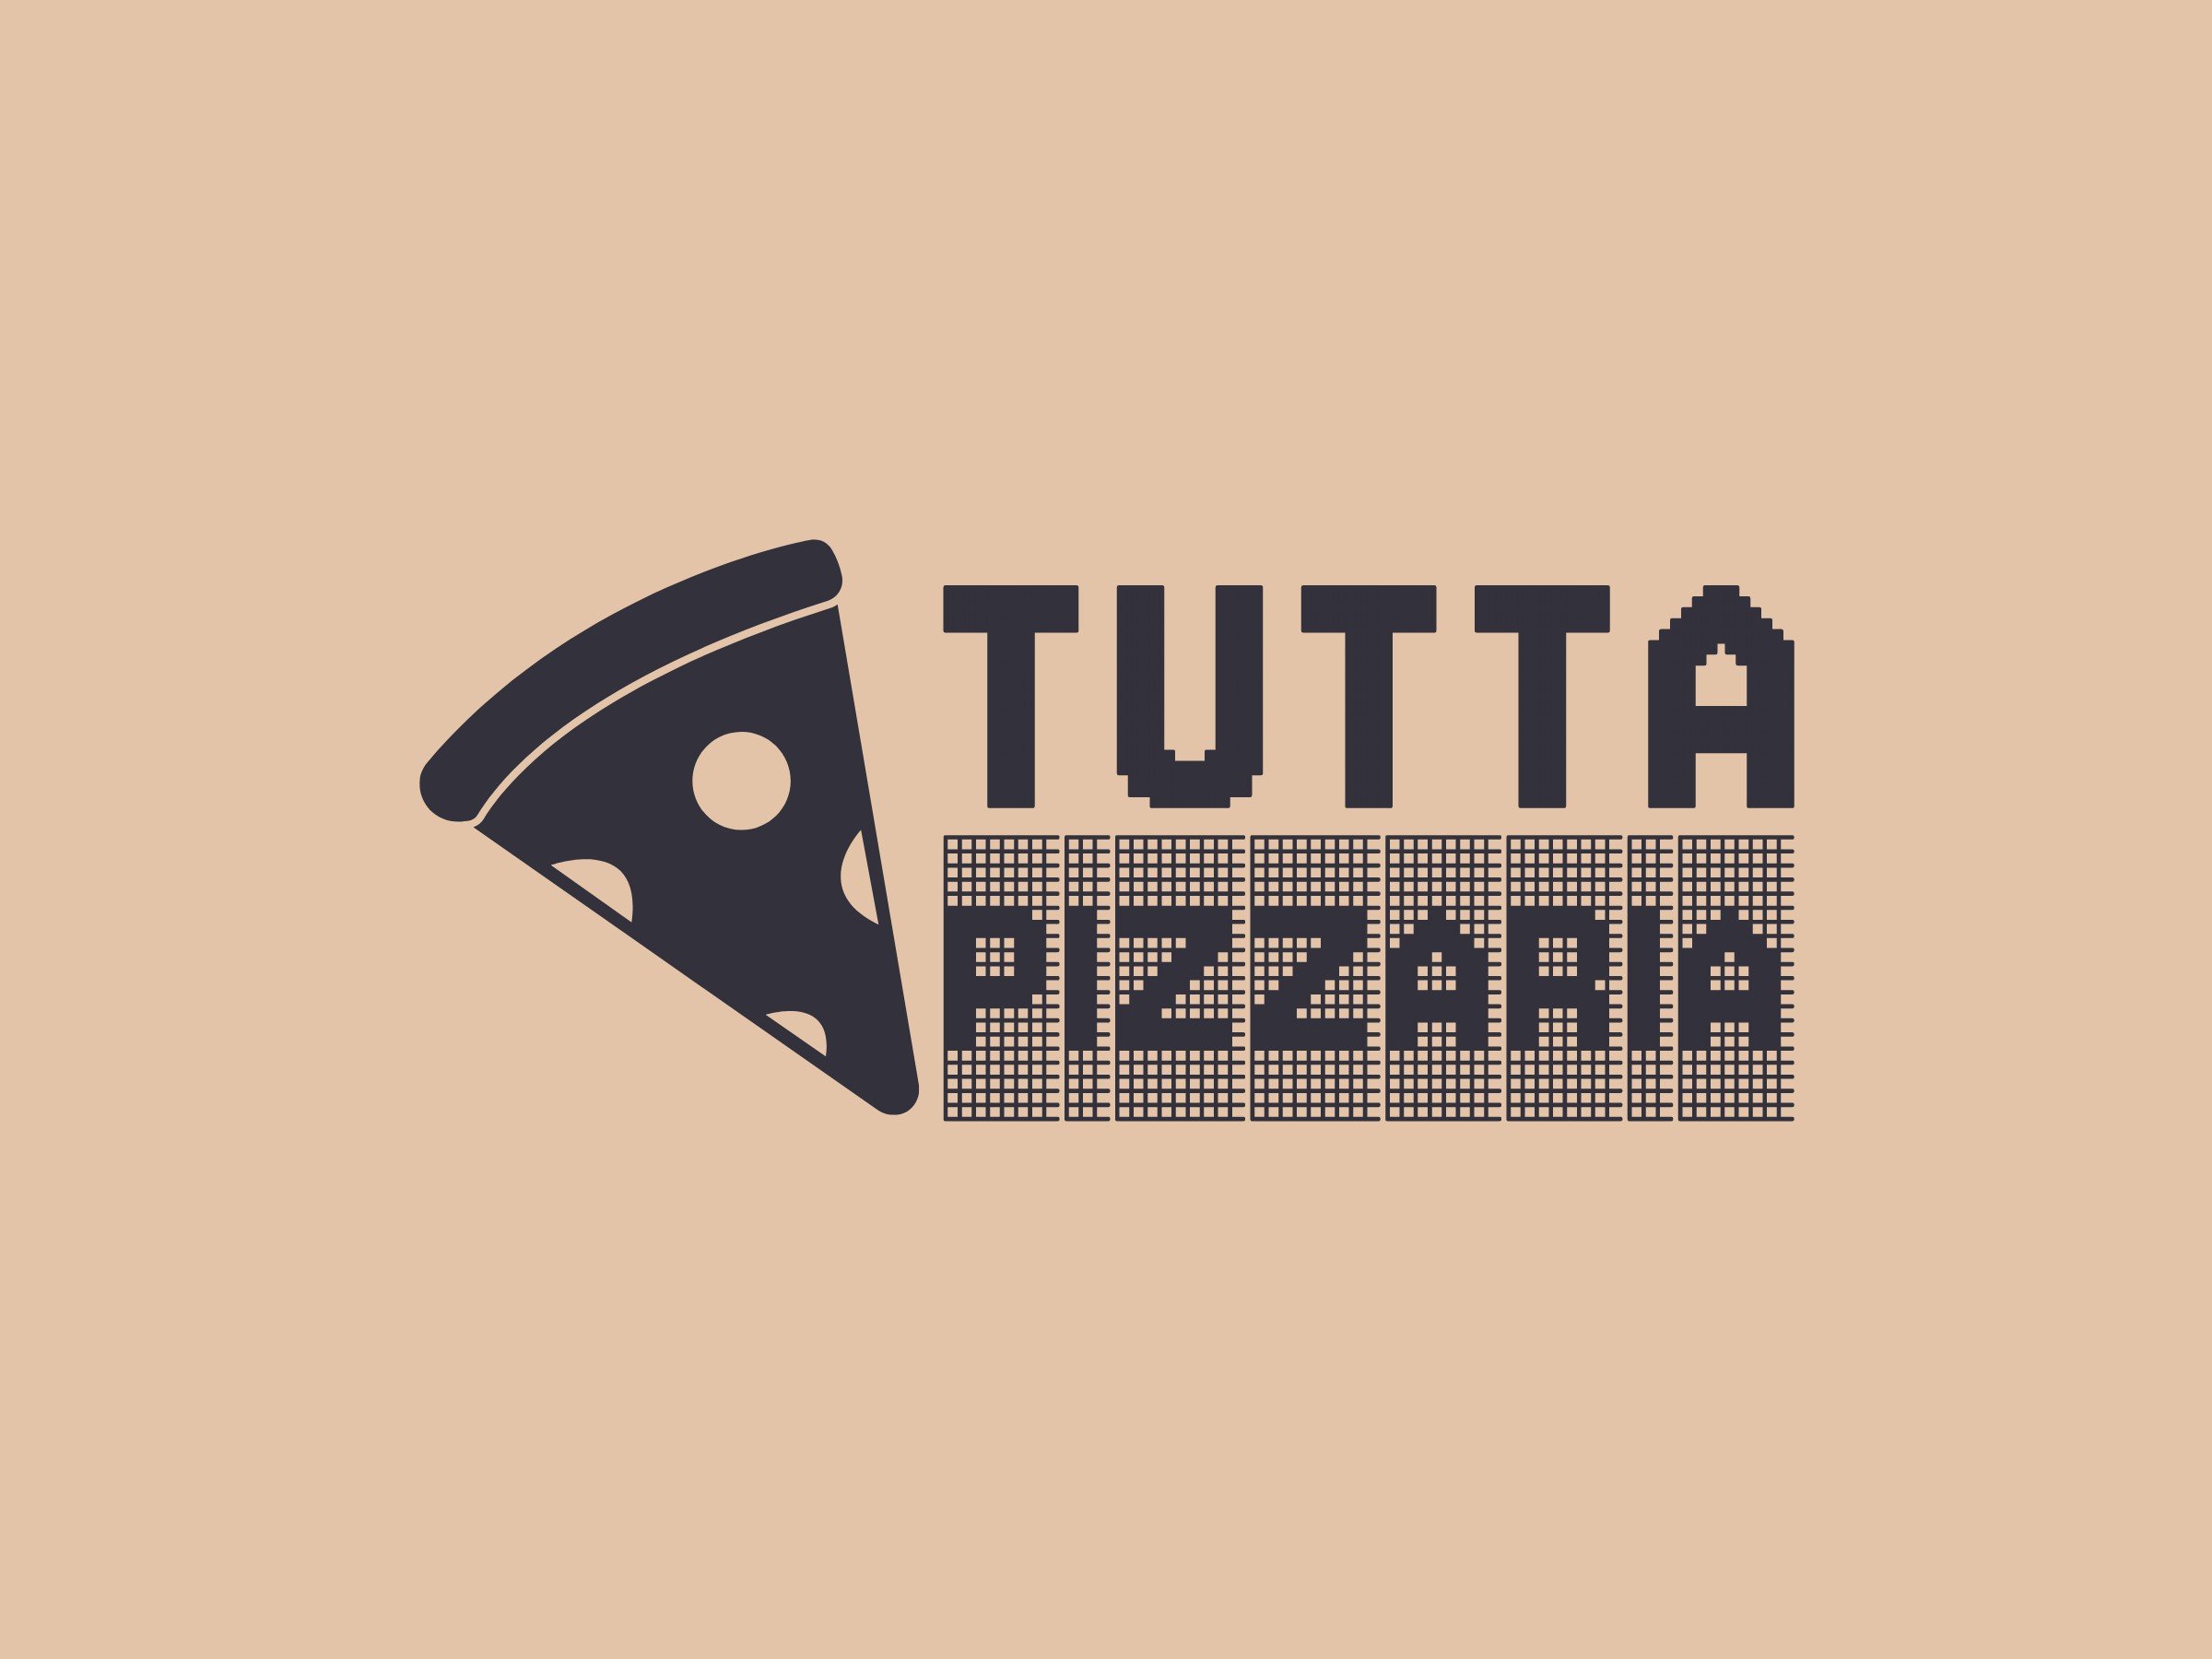 Tutta Pizzaria - 